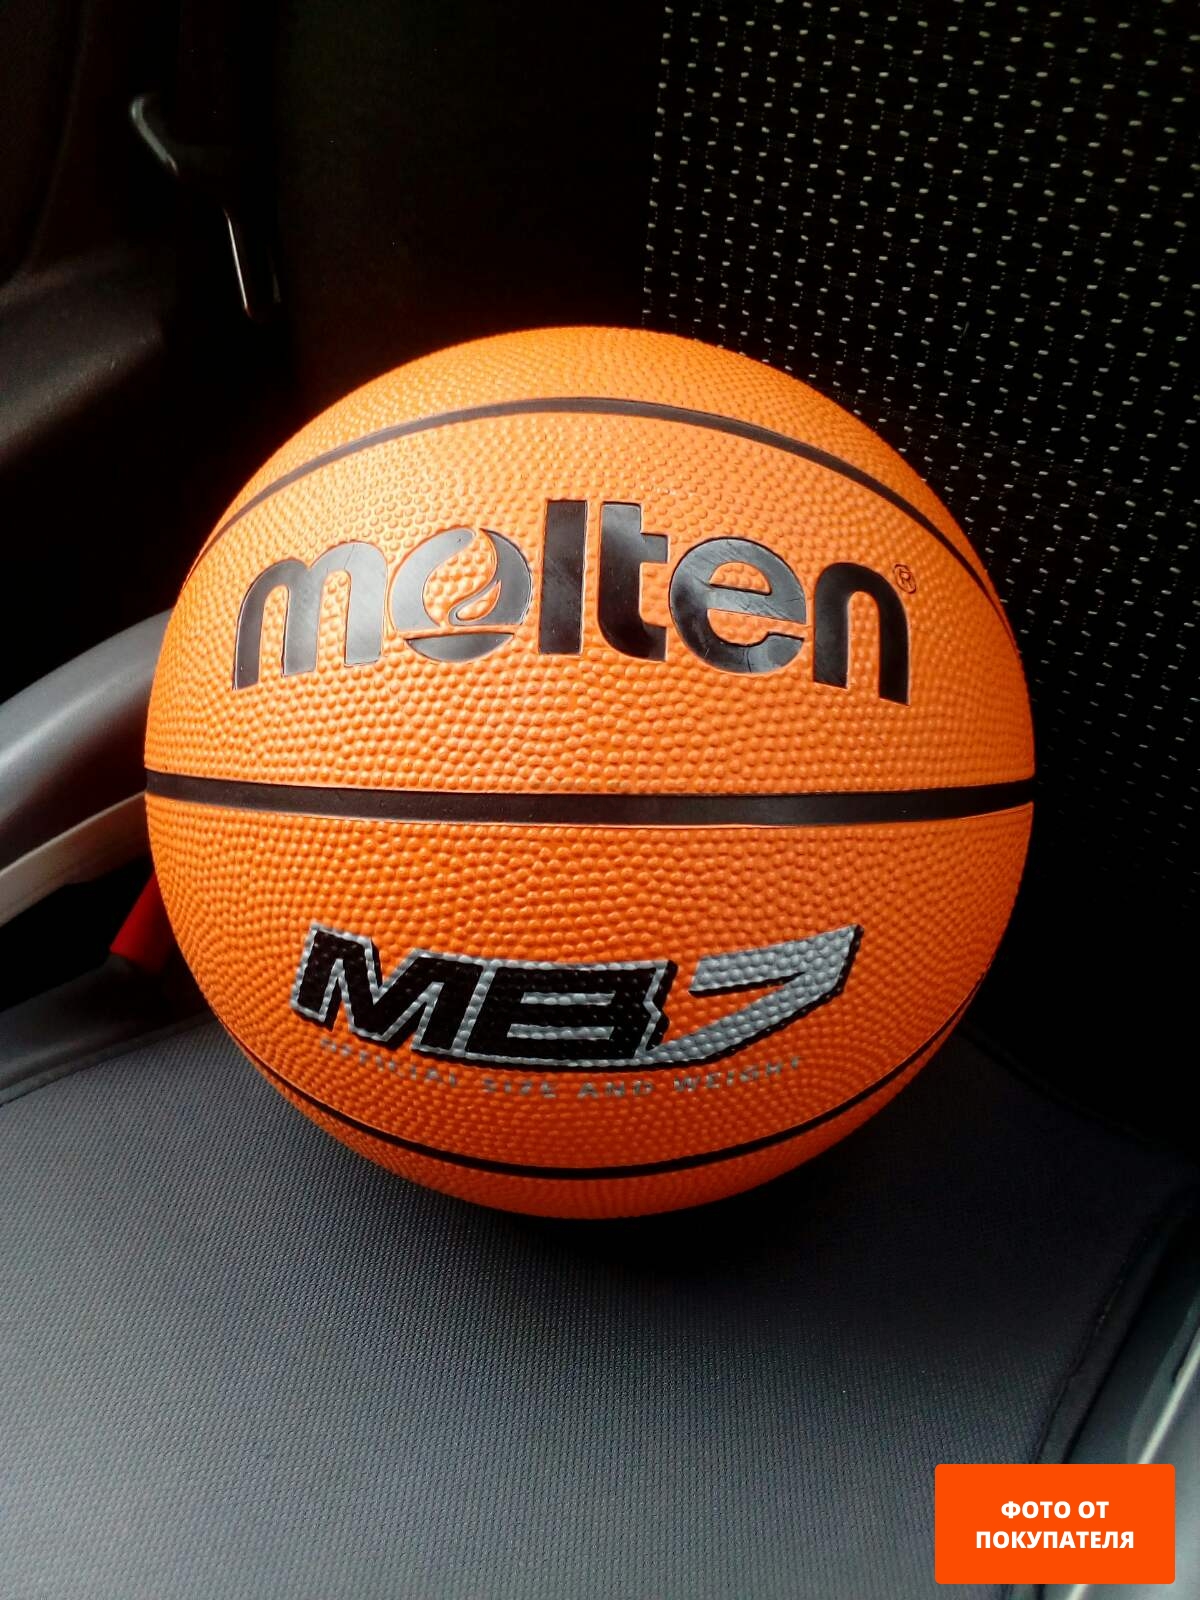 Баскетбольный мяч MOLTEN MB5 - Фото 3